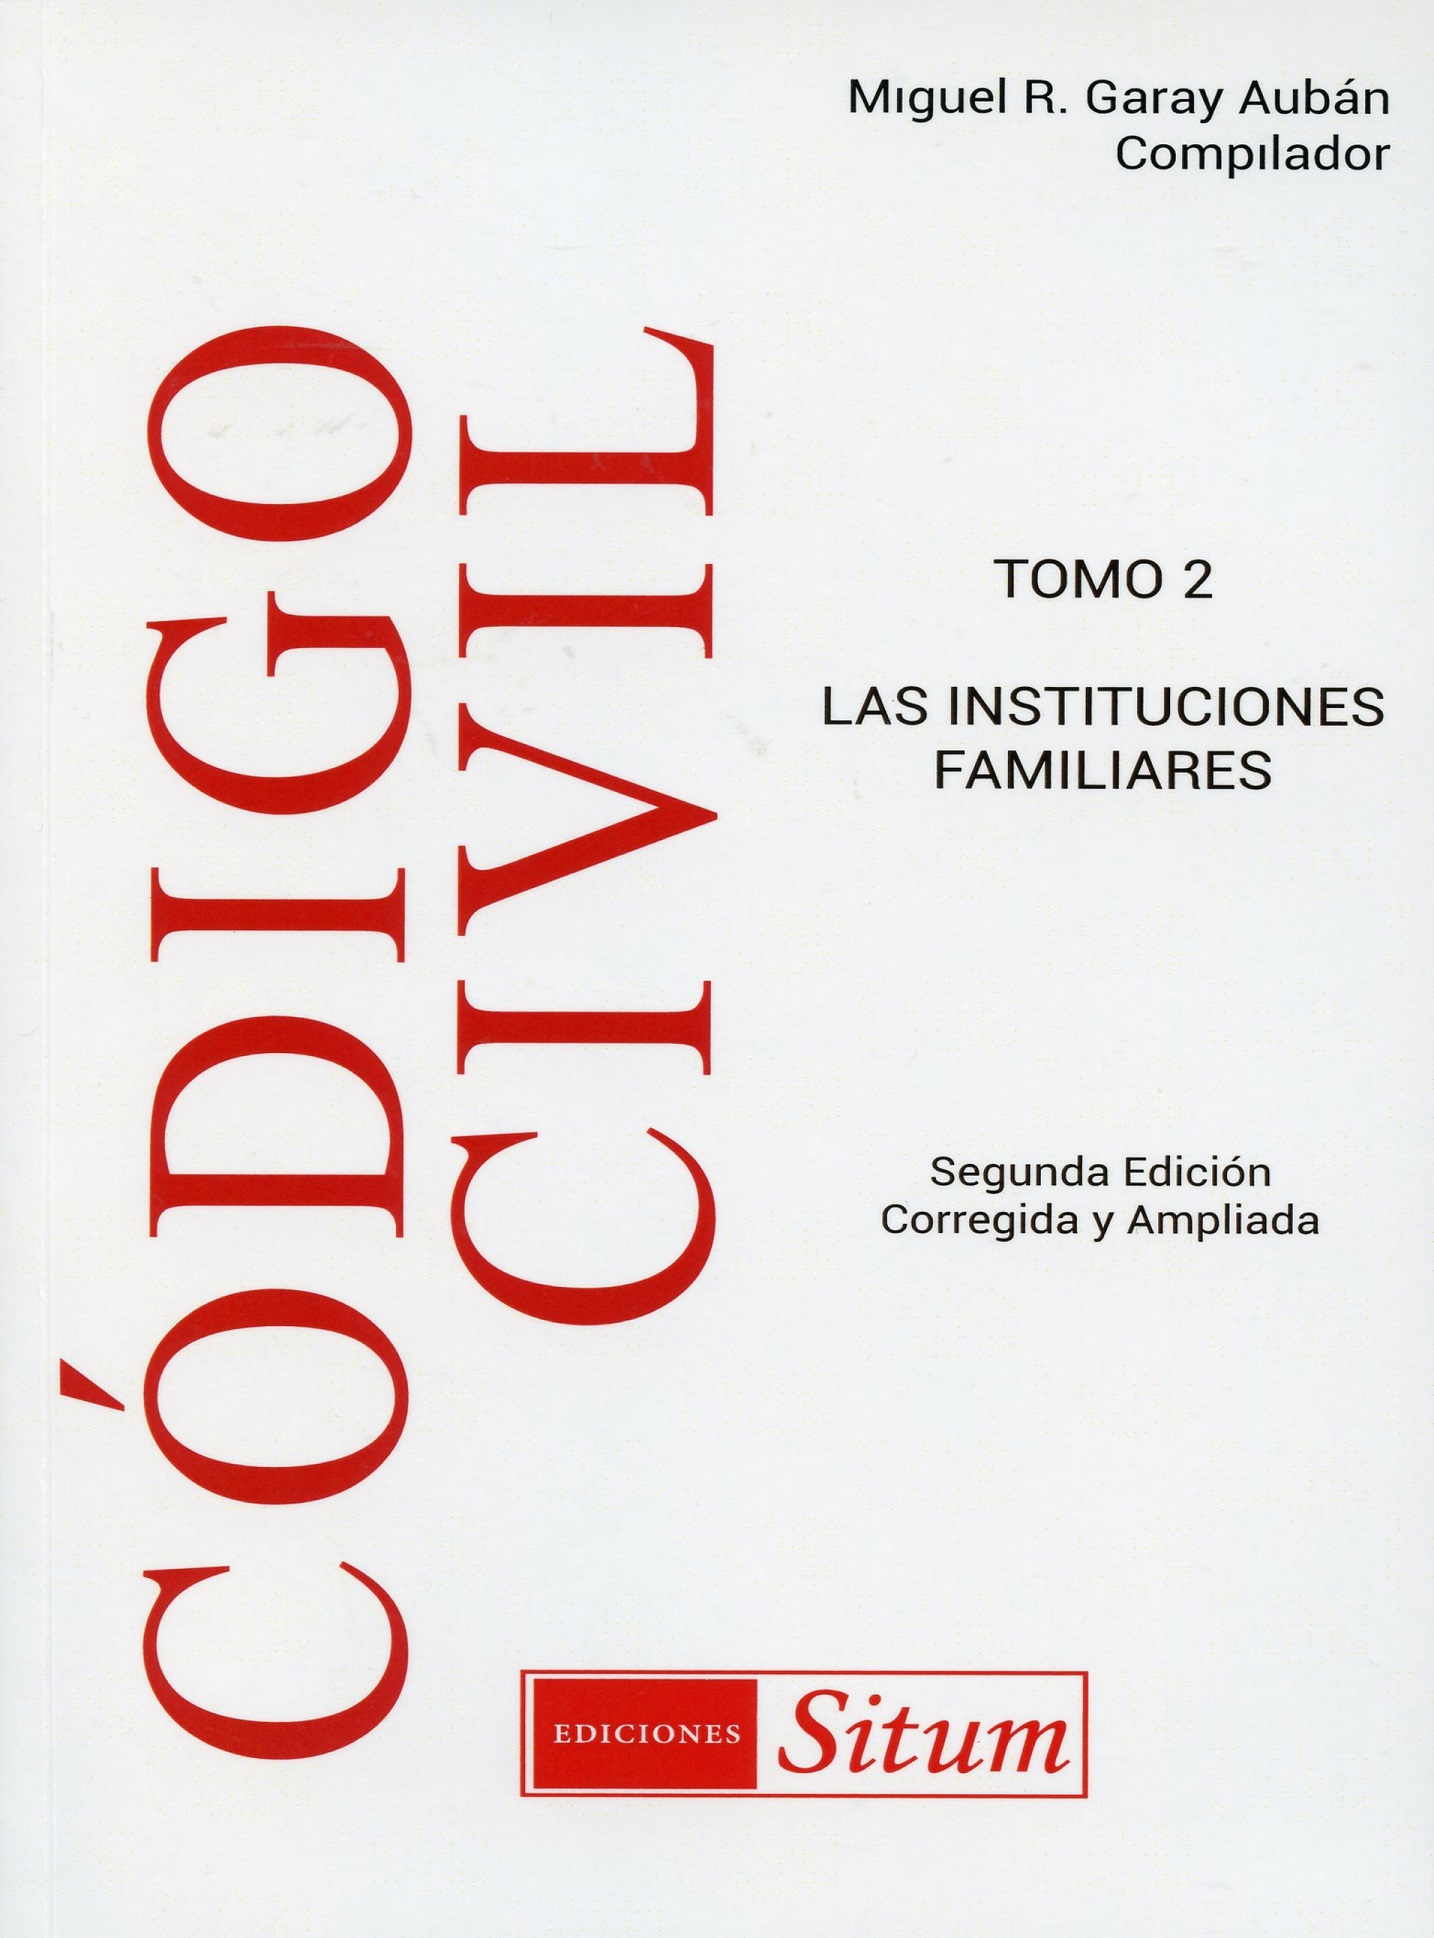 Libro sobre el Código Civil de Puerto Rico